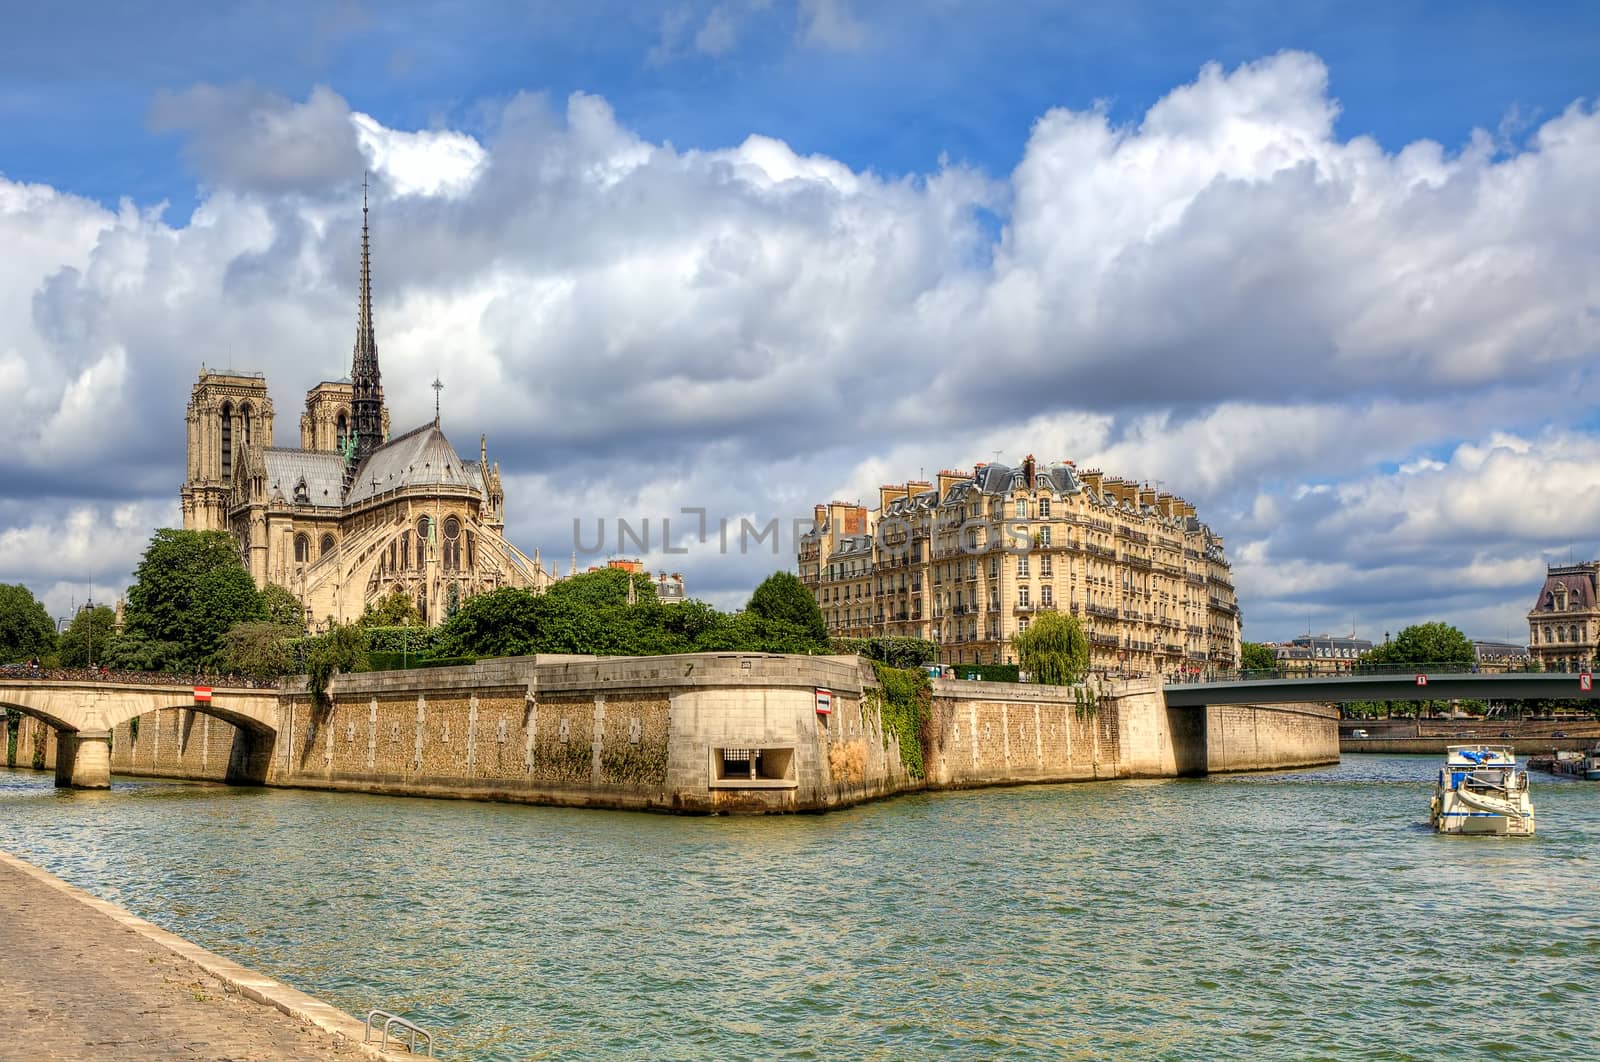 Notre Dame de Paris cathedral. by rglinsky